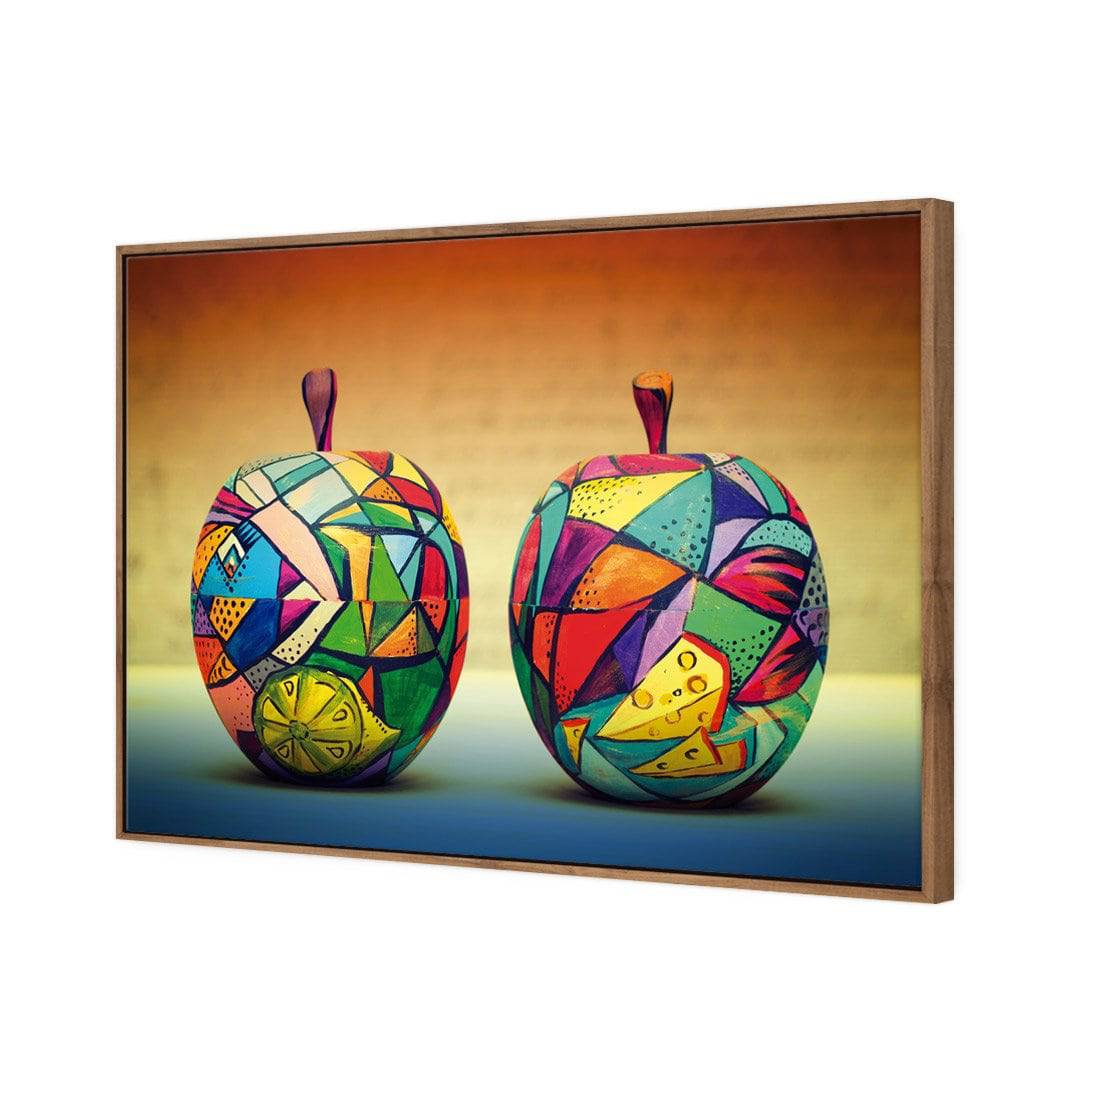 Forbidden Fruit Canvas Art-Canvas-Wall Art Designs-45x30cm-Canvas - Natural Frame-Wall Art Designs